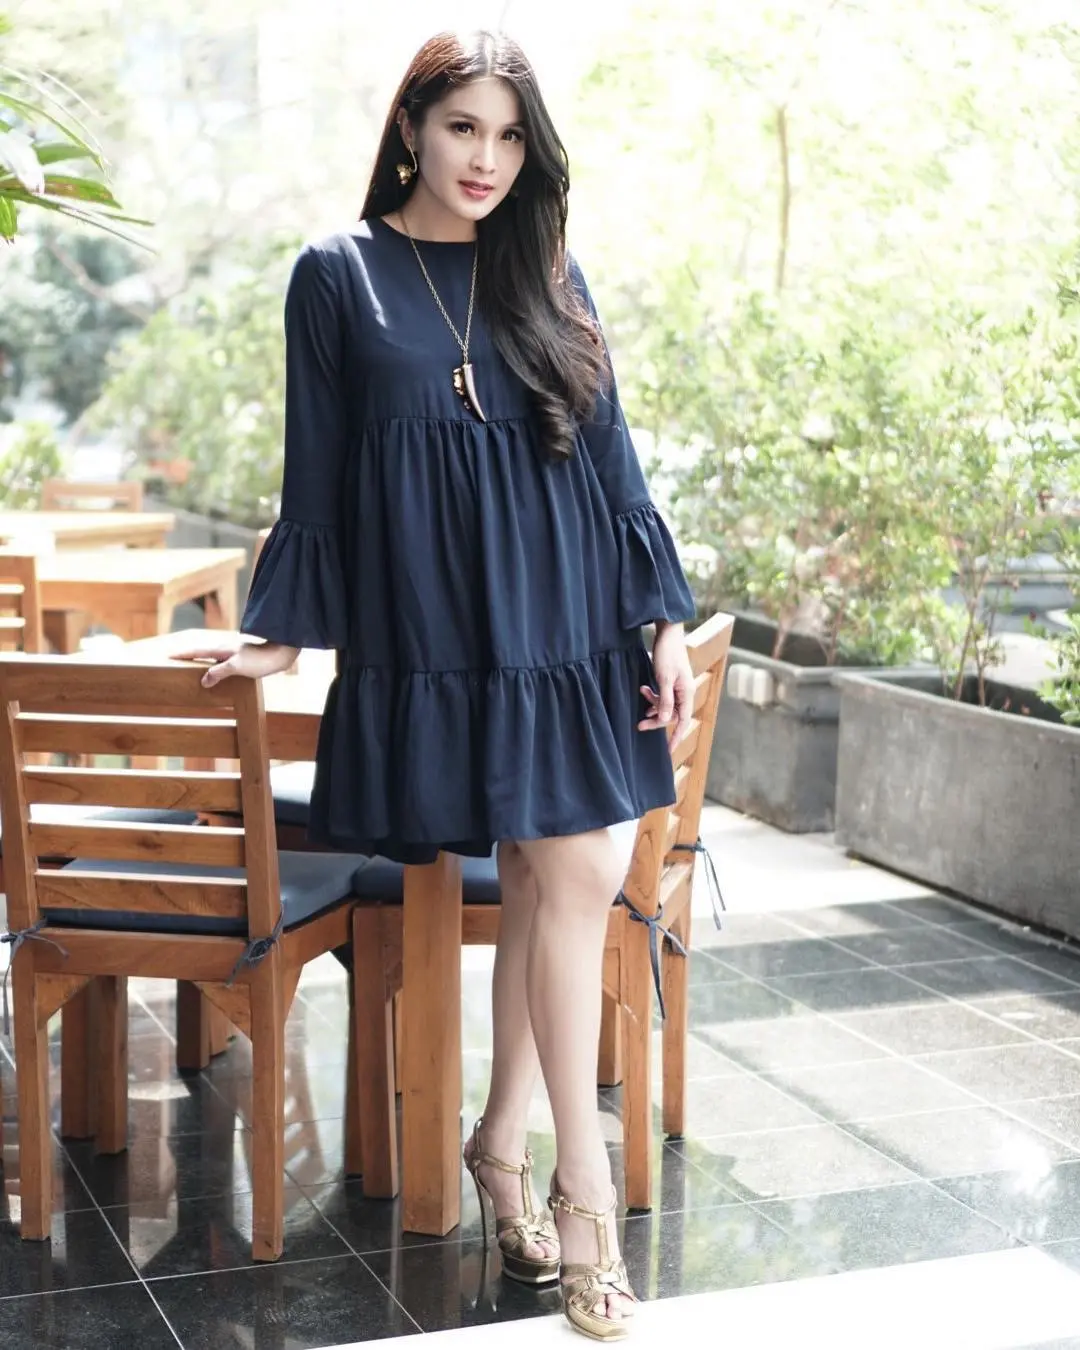 Sandra Dewi memakai dress yang bikin tampilannya tetap cantik dan seksi. (Image: sandradewi88/instagram)